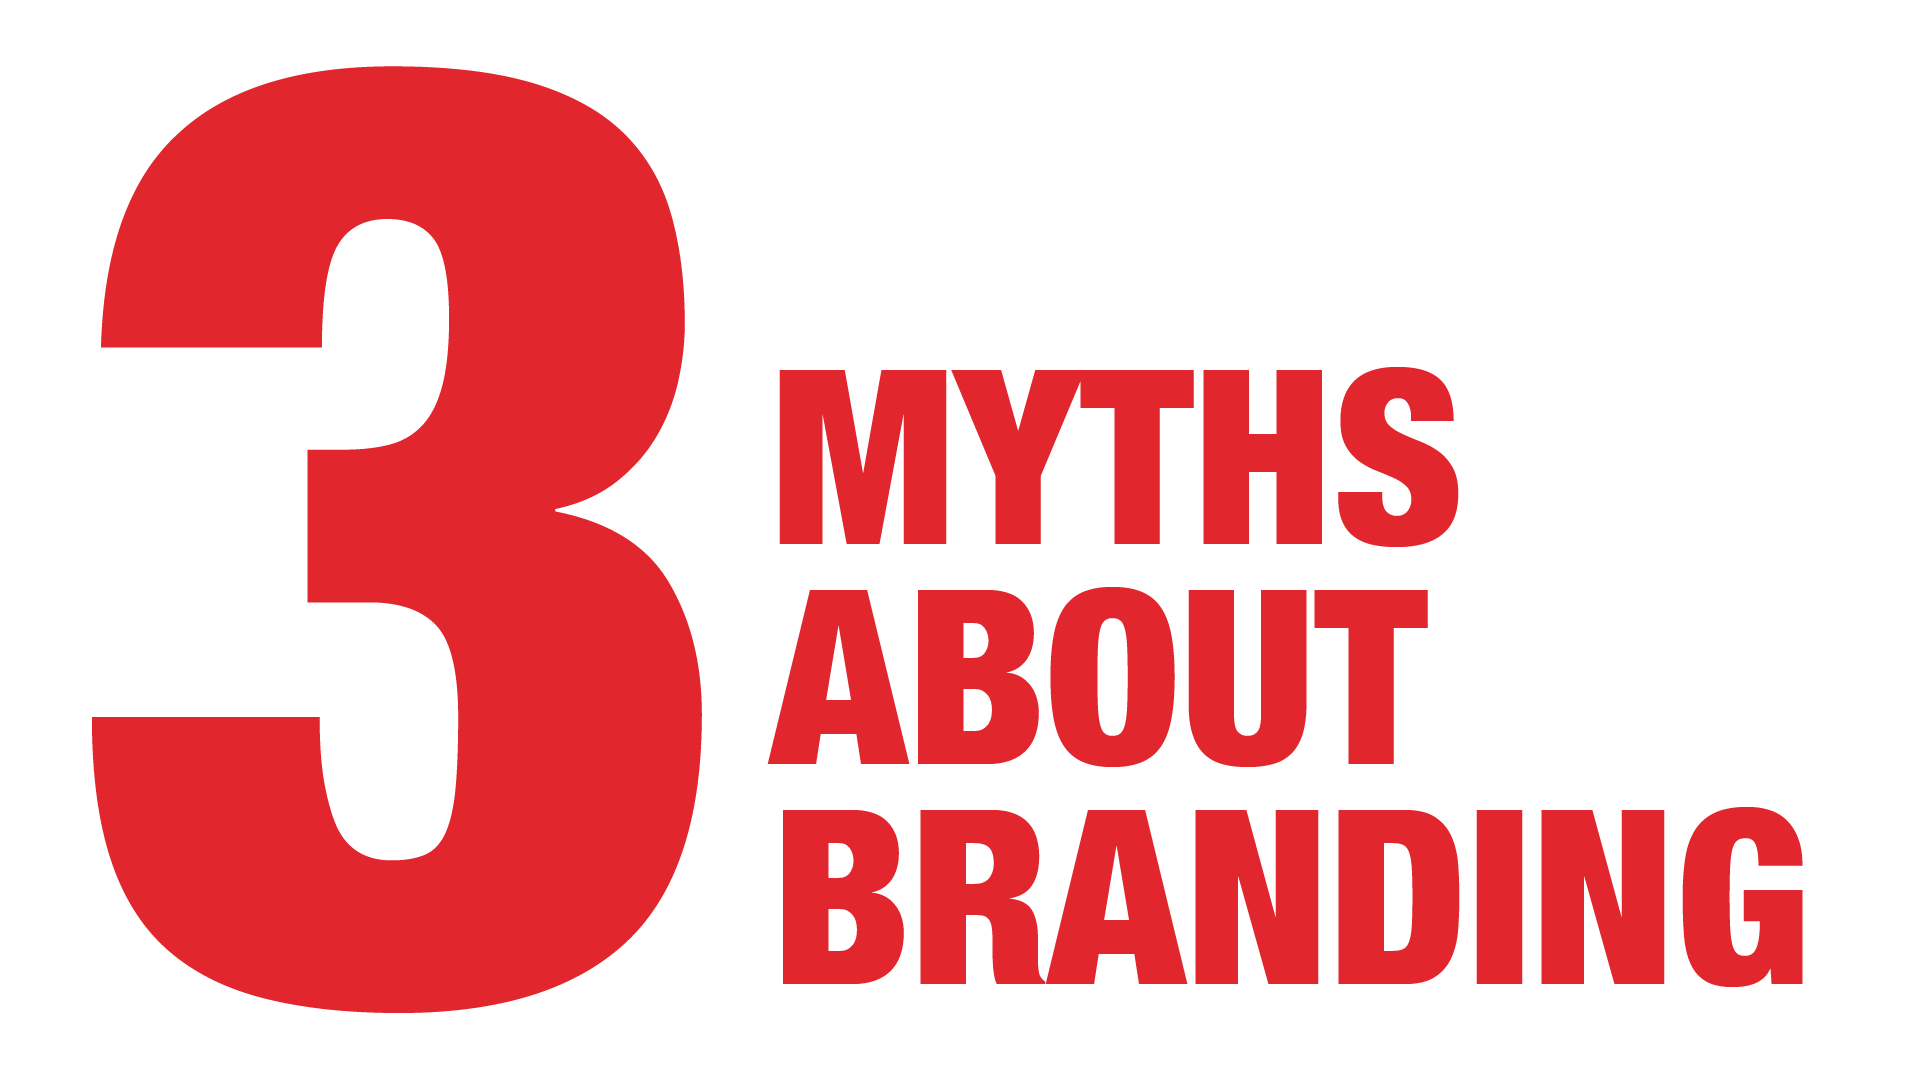 3 Myths about branding - Manraj Ubhi